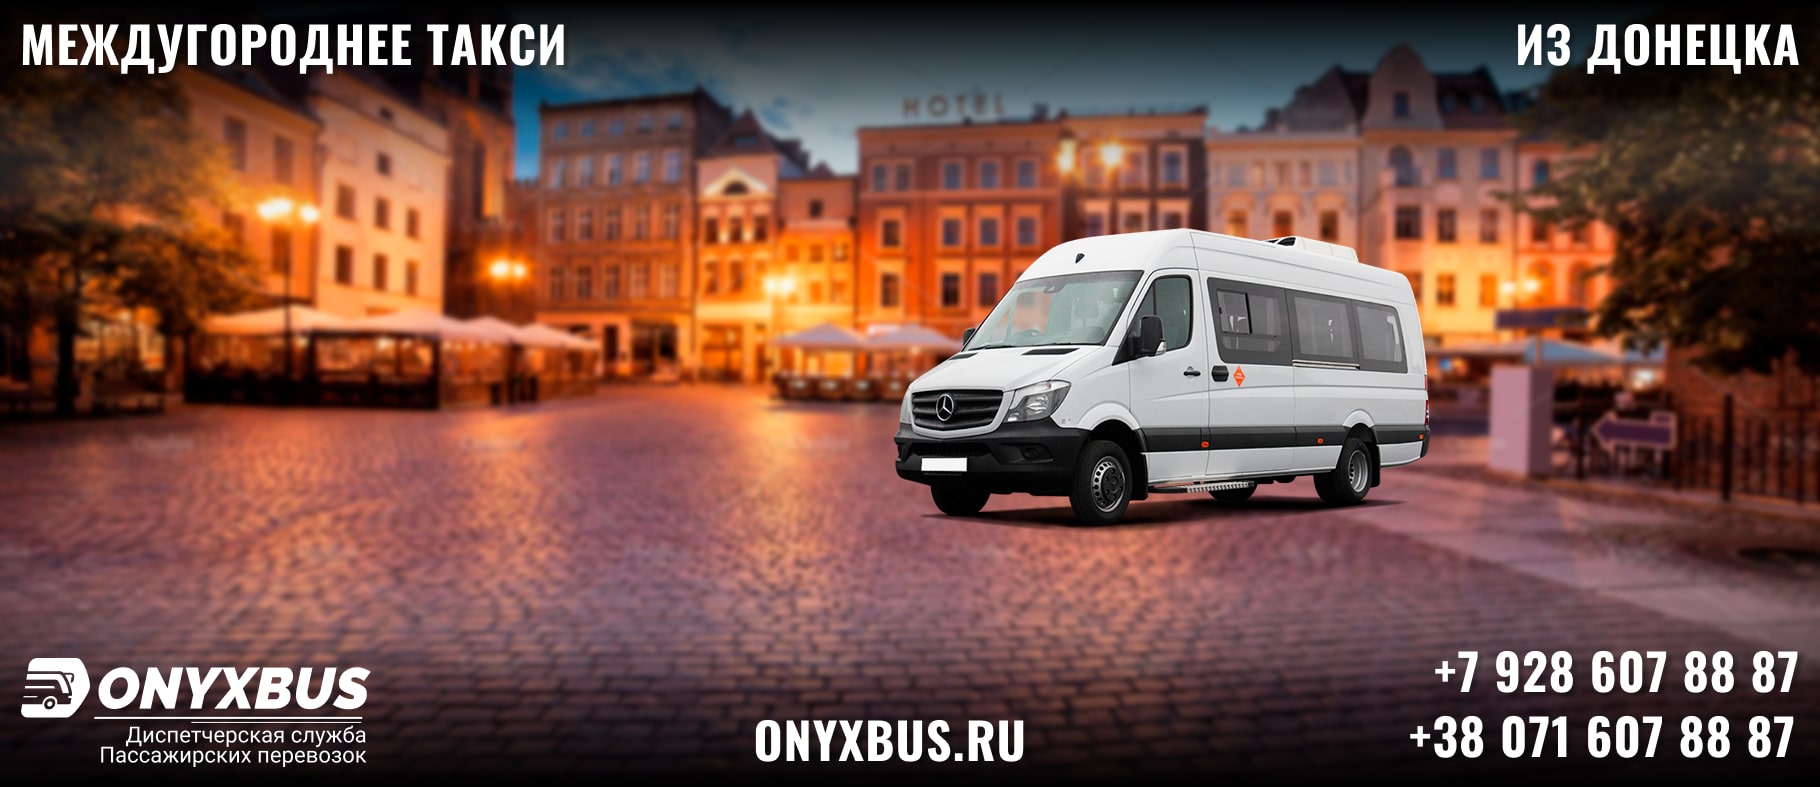 Заказ <br>Микроавтобуса Донецк - Смоленск